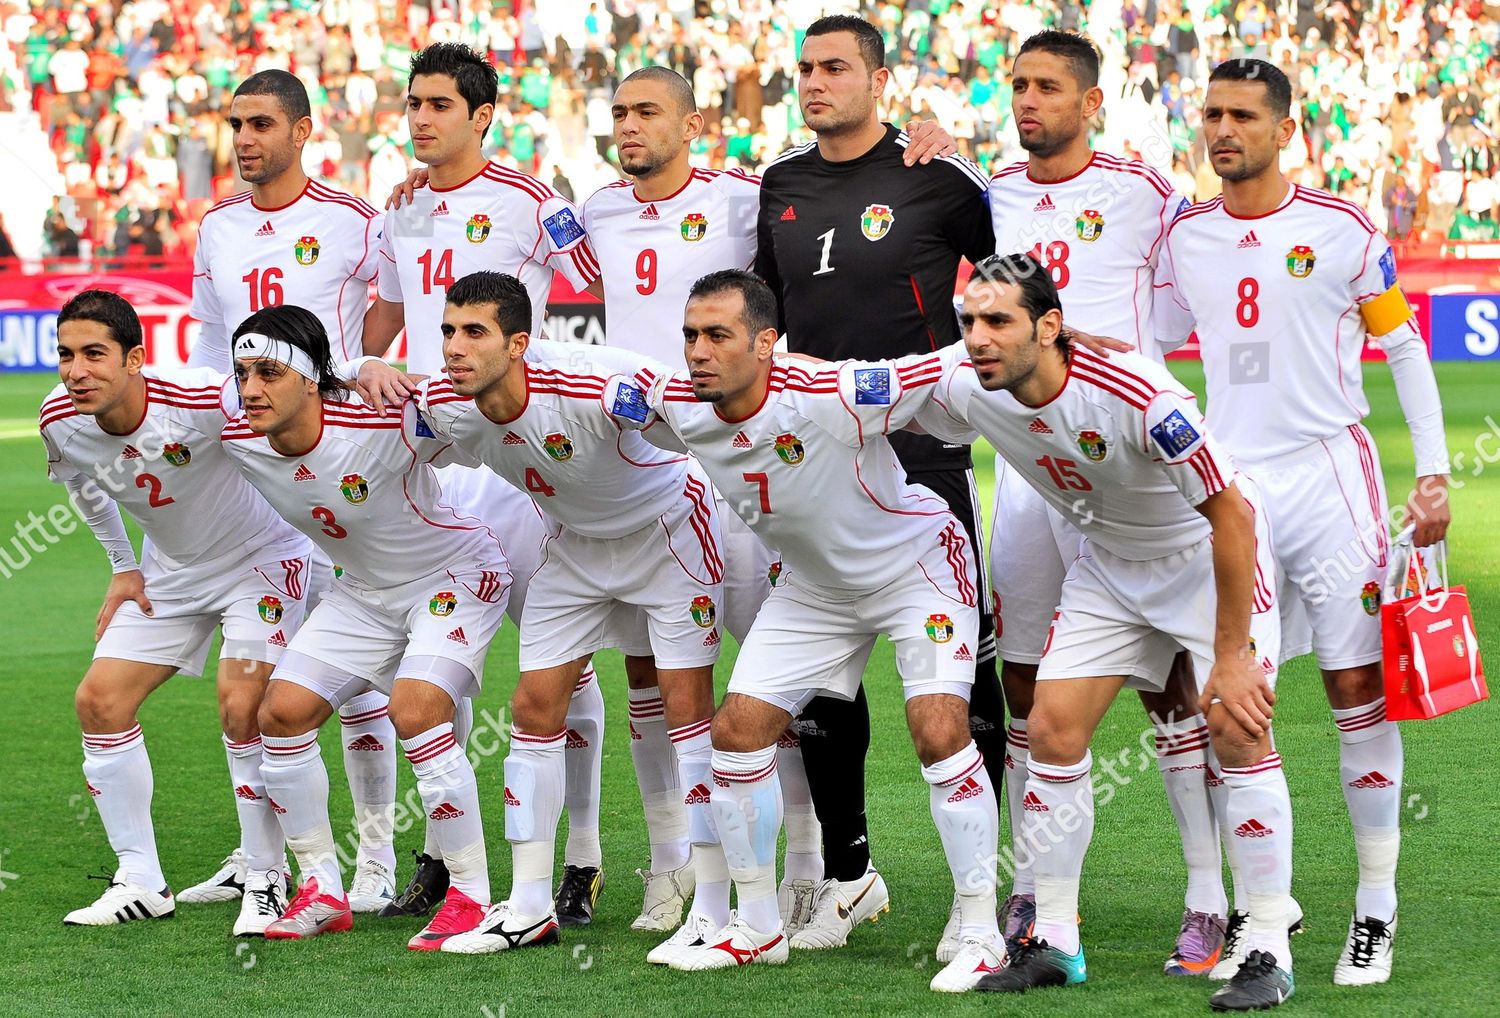 jordan national soccer team